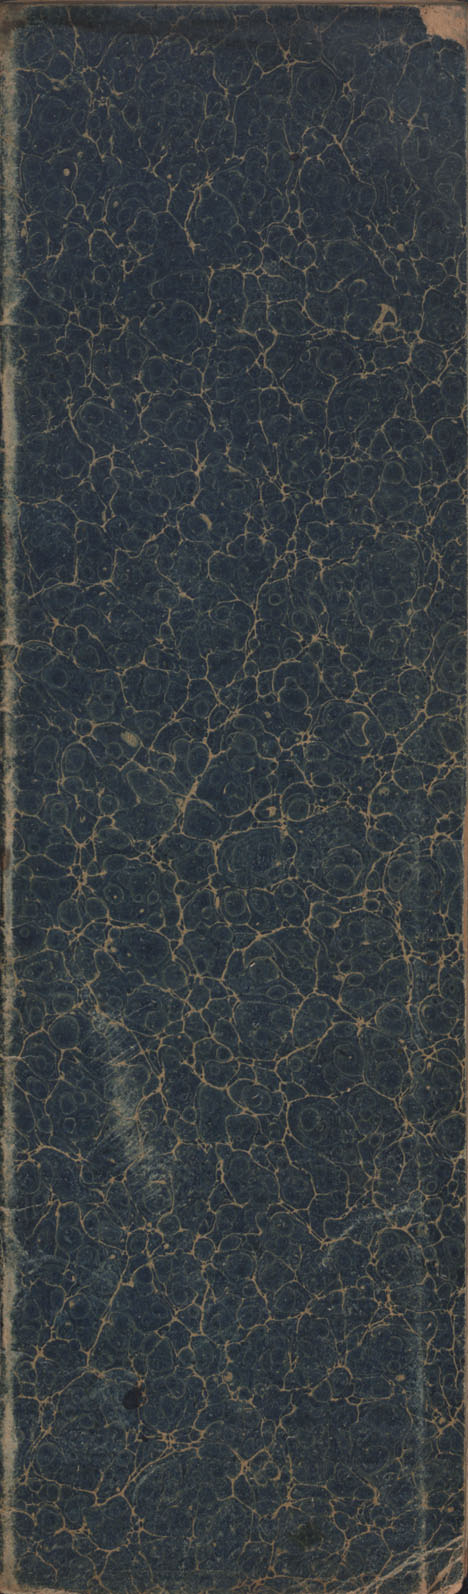 1904 Daybook number 20 